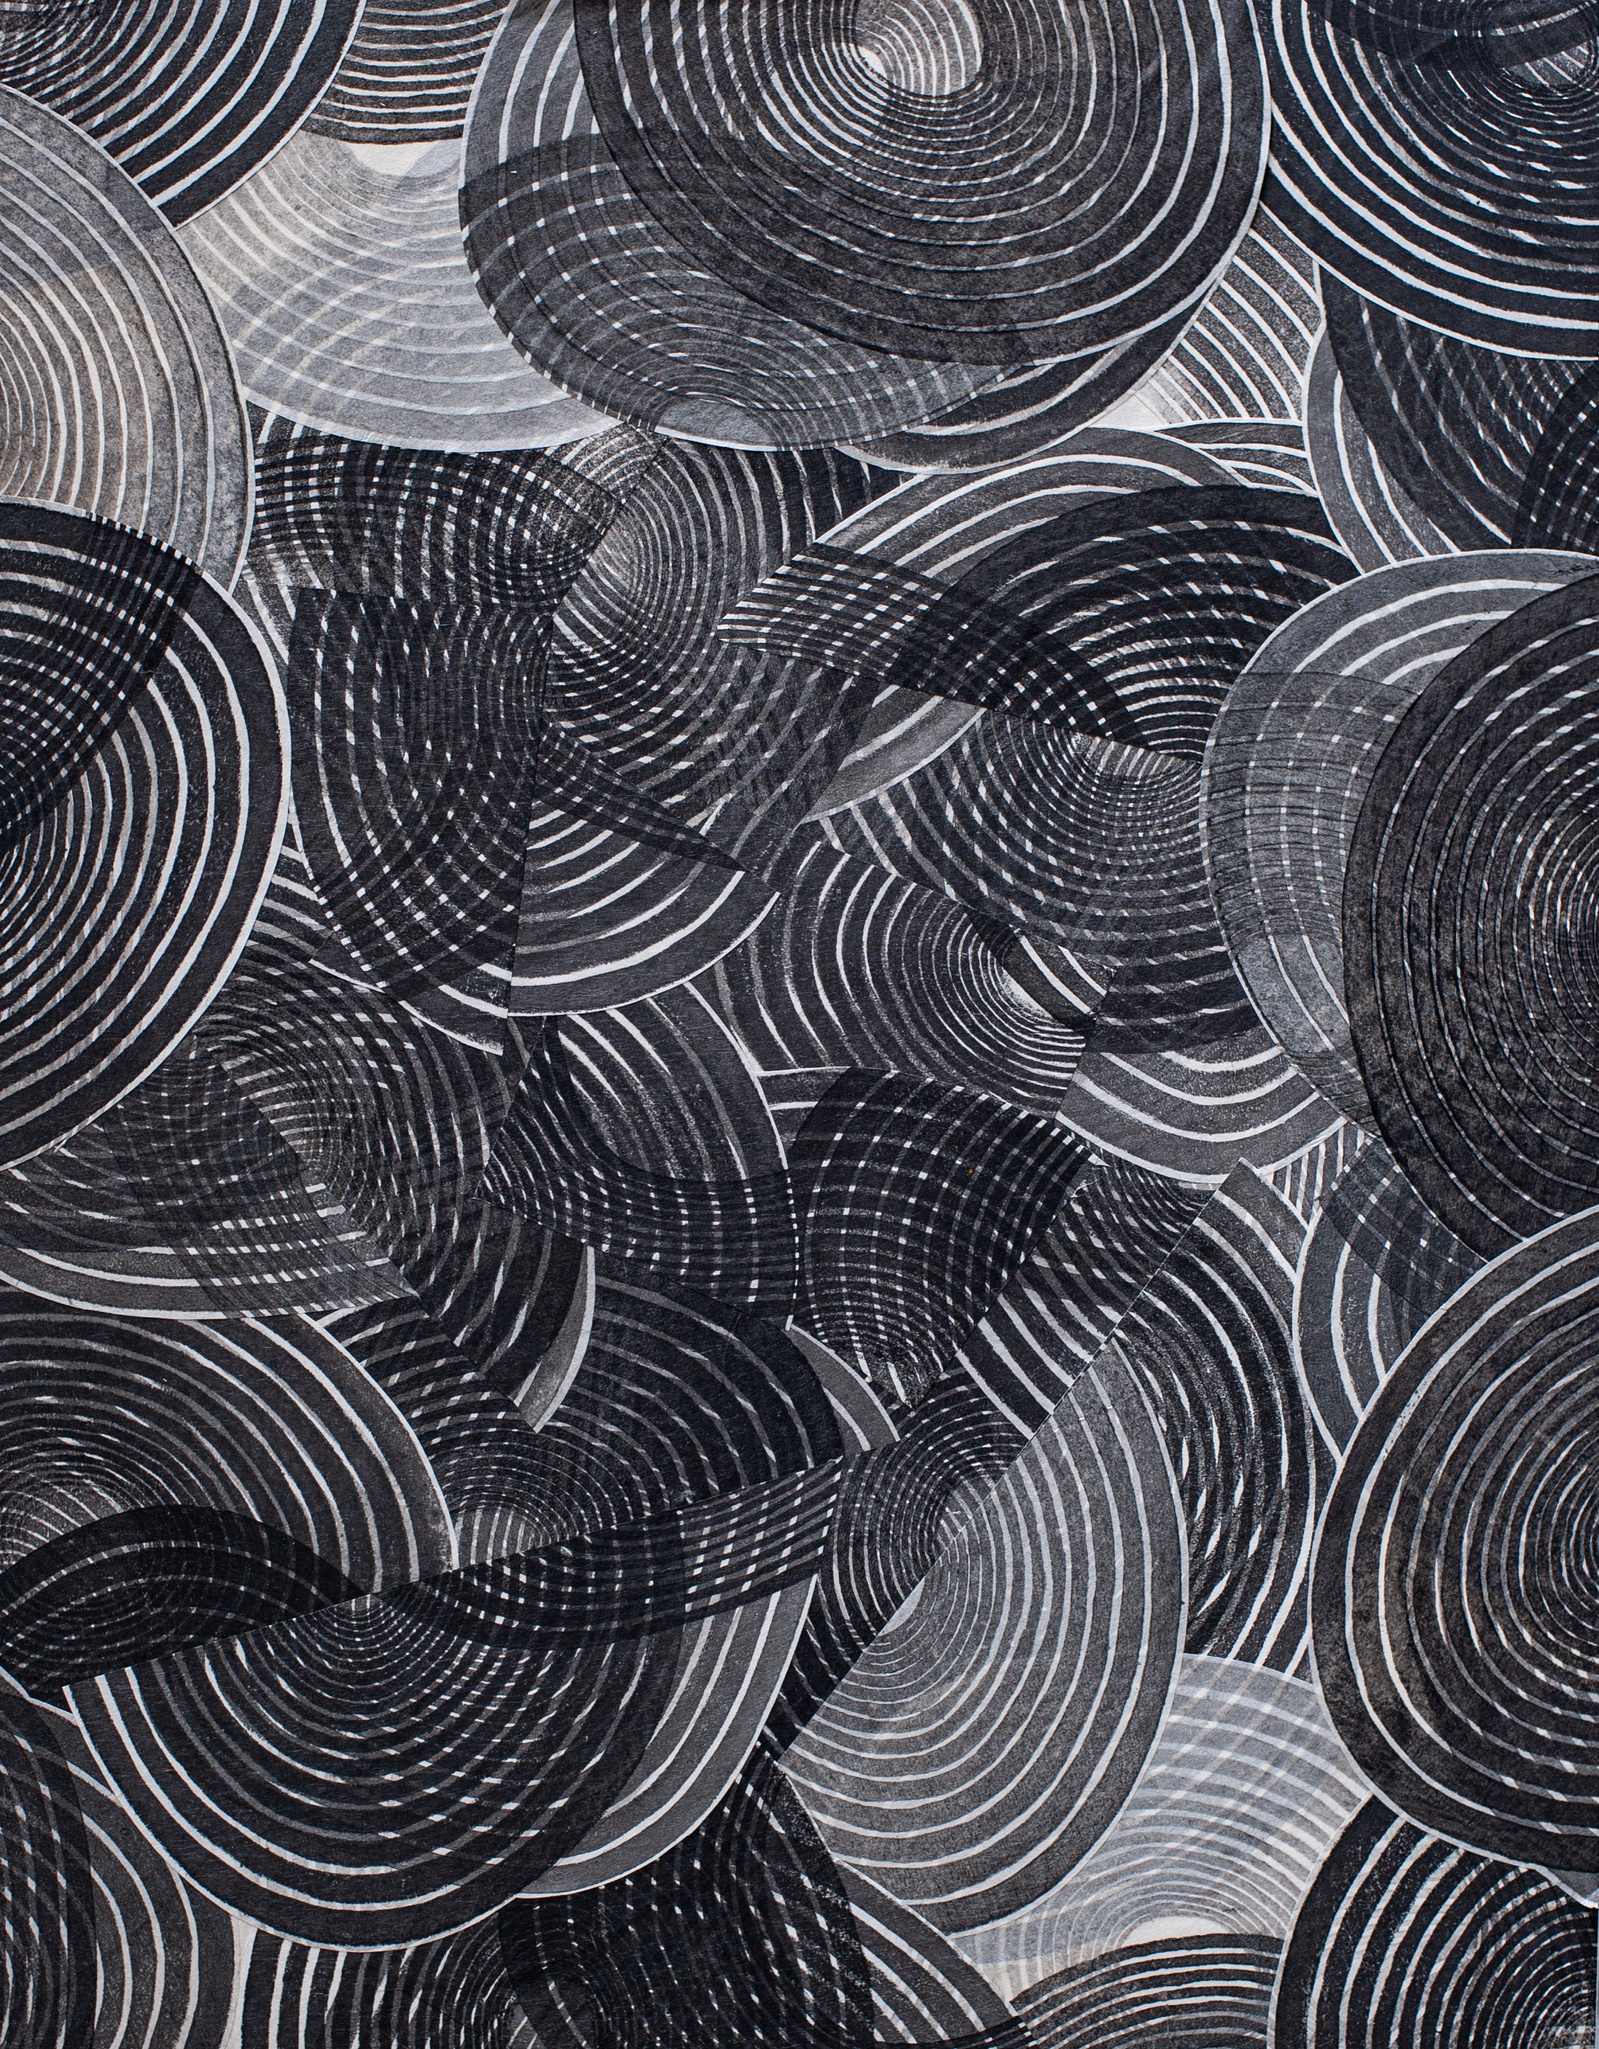 Patty Hudak, Depth Spirit, 2021, mokuhanga collage on panel, 22" x 16.75"
Kentler International Drawing Space